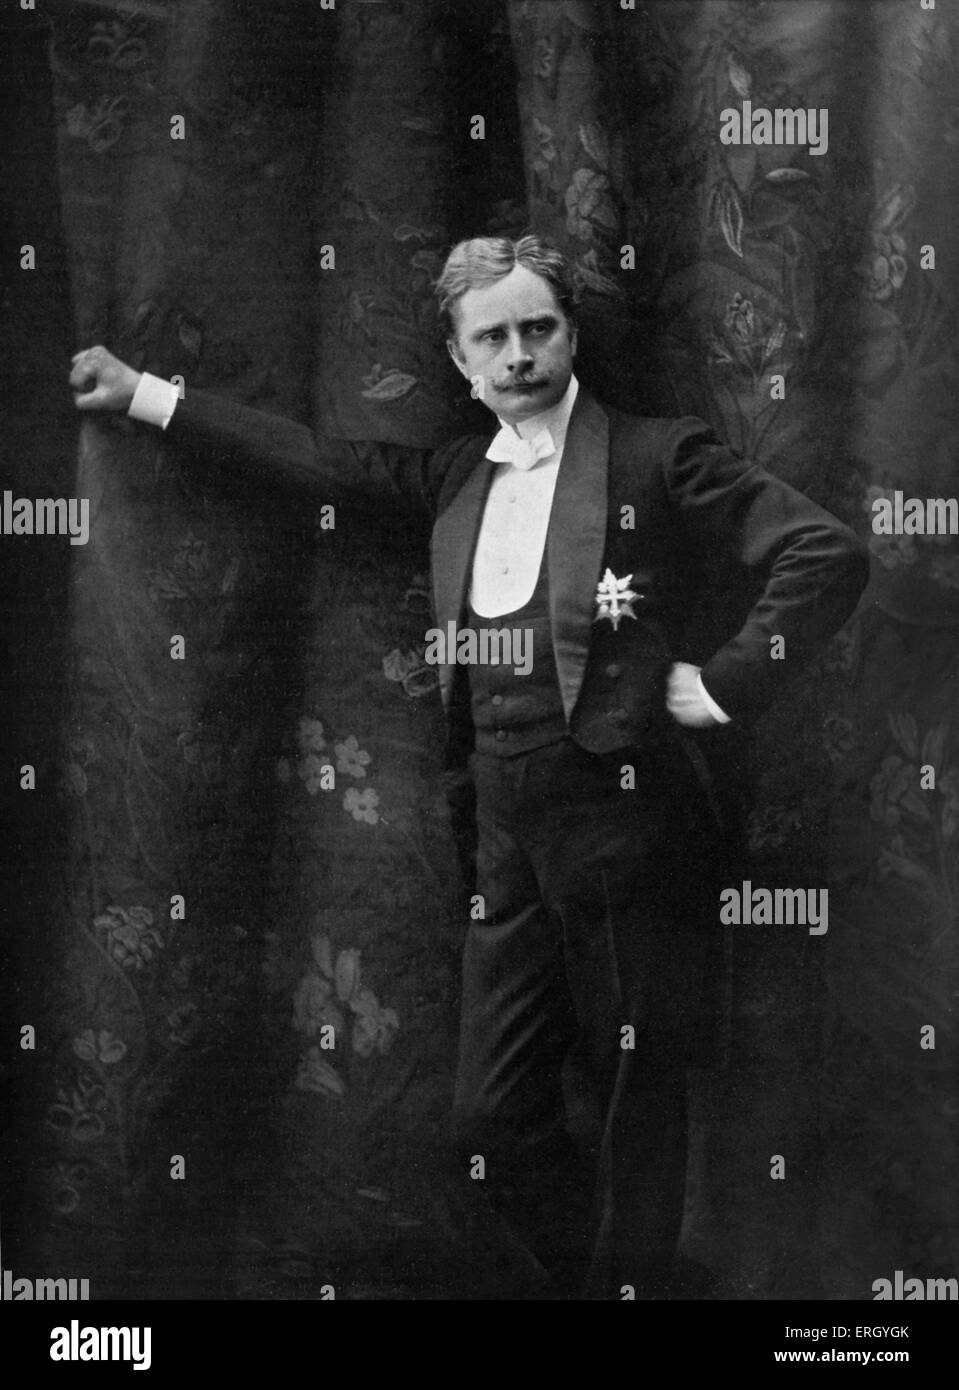 Charles le Bargy dans Rôle du Marquis de Priola- l'acteur et réalisateur de films au début, 28 août 1858 - 5 février 1936. Banque D'Images